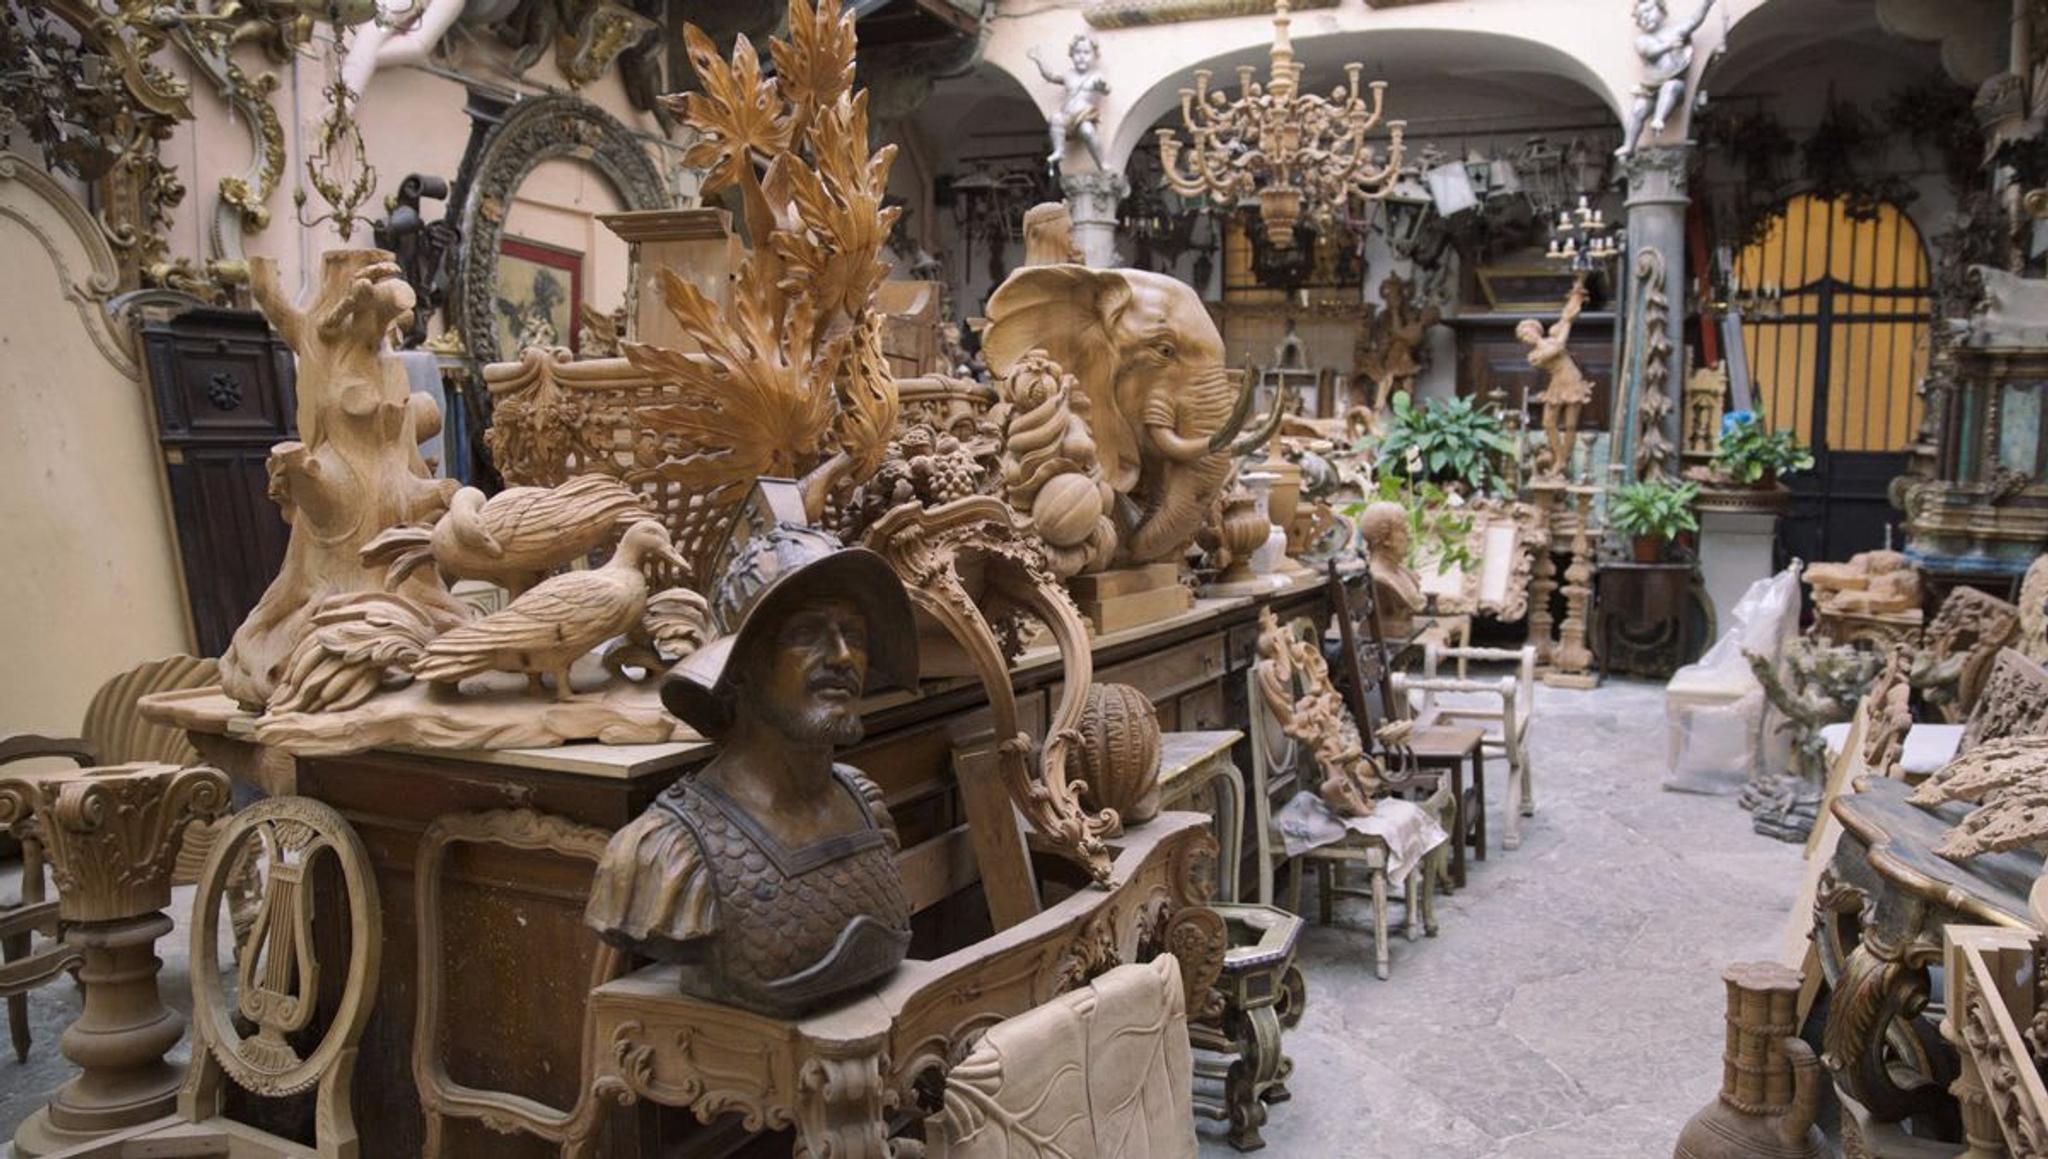 The Art of Wood Carving by Bartolozzi e Maioli